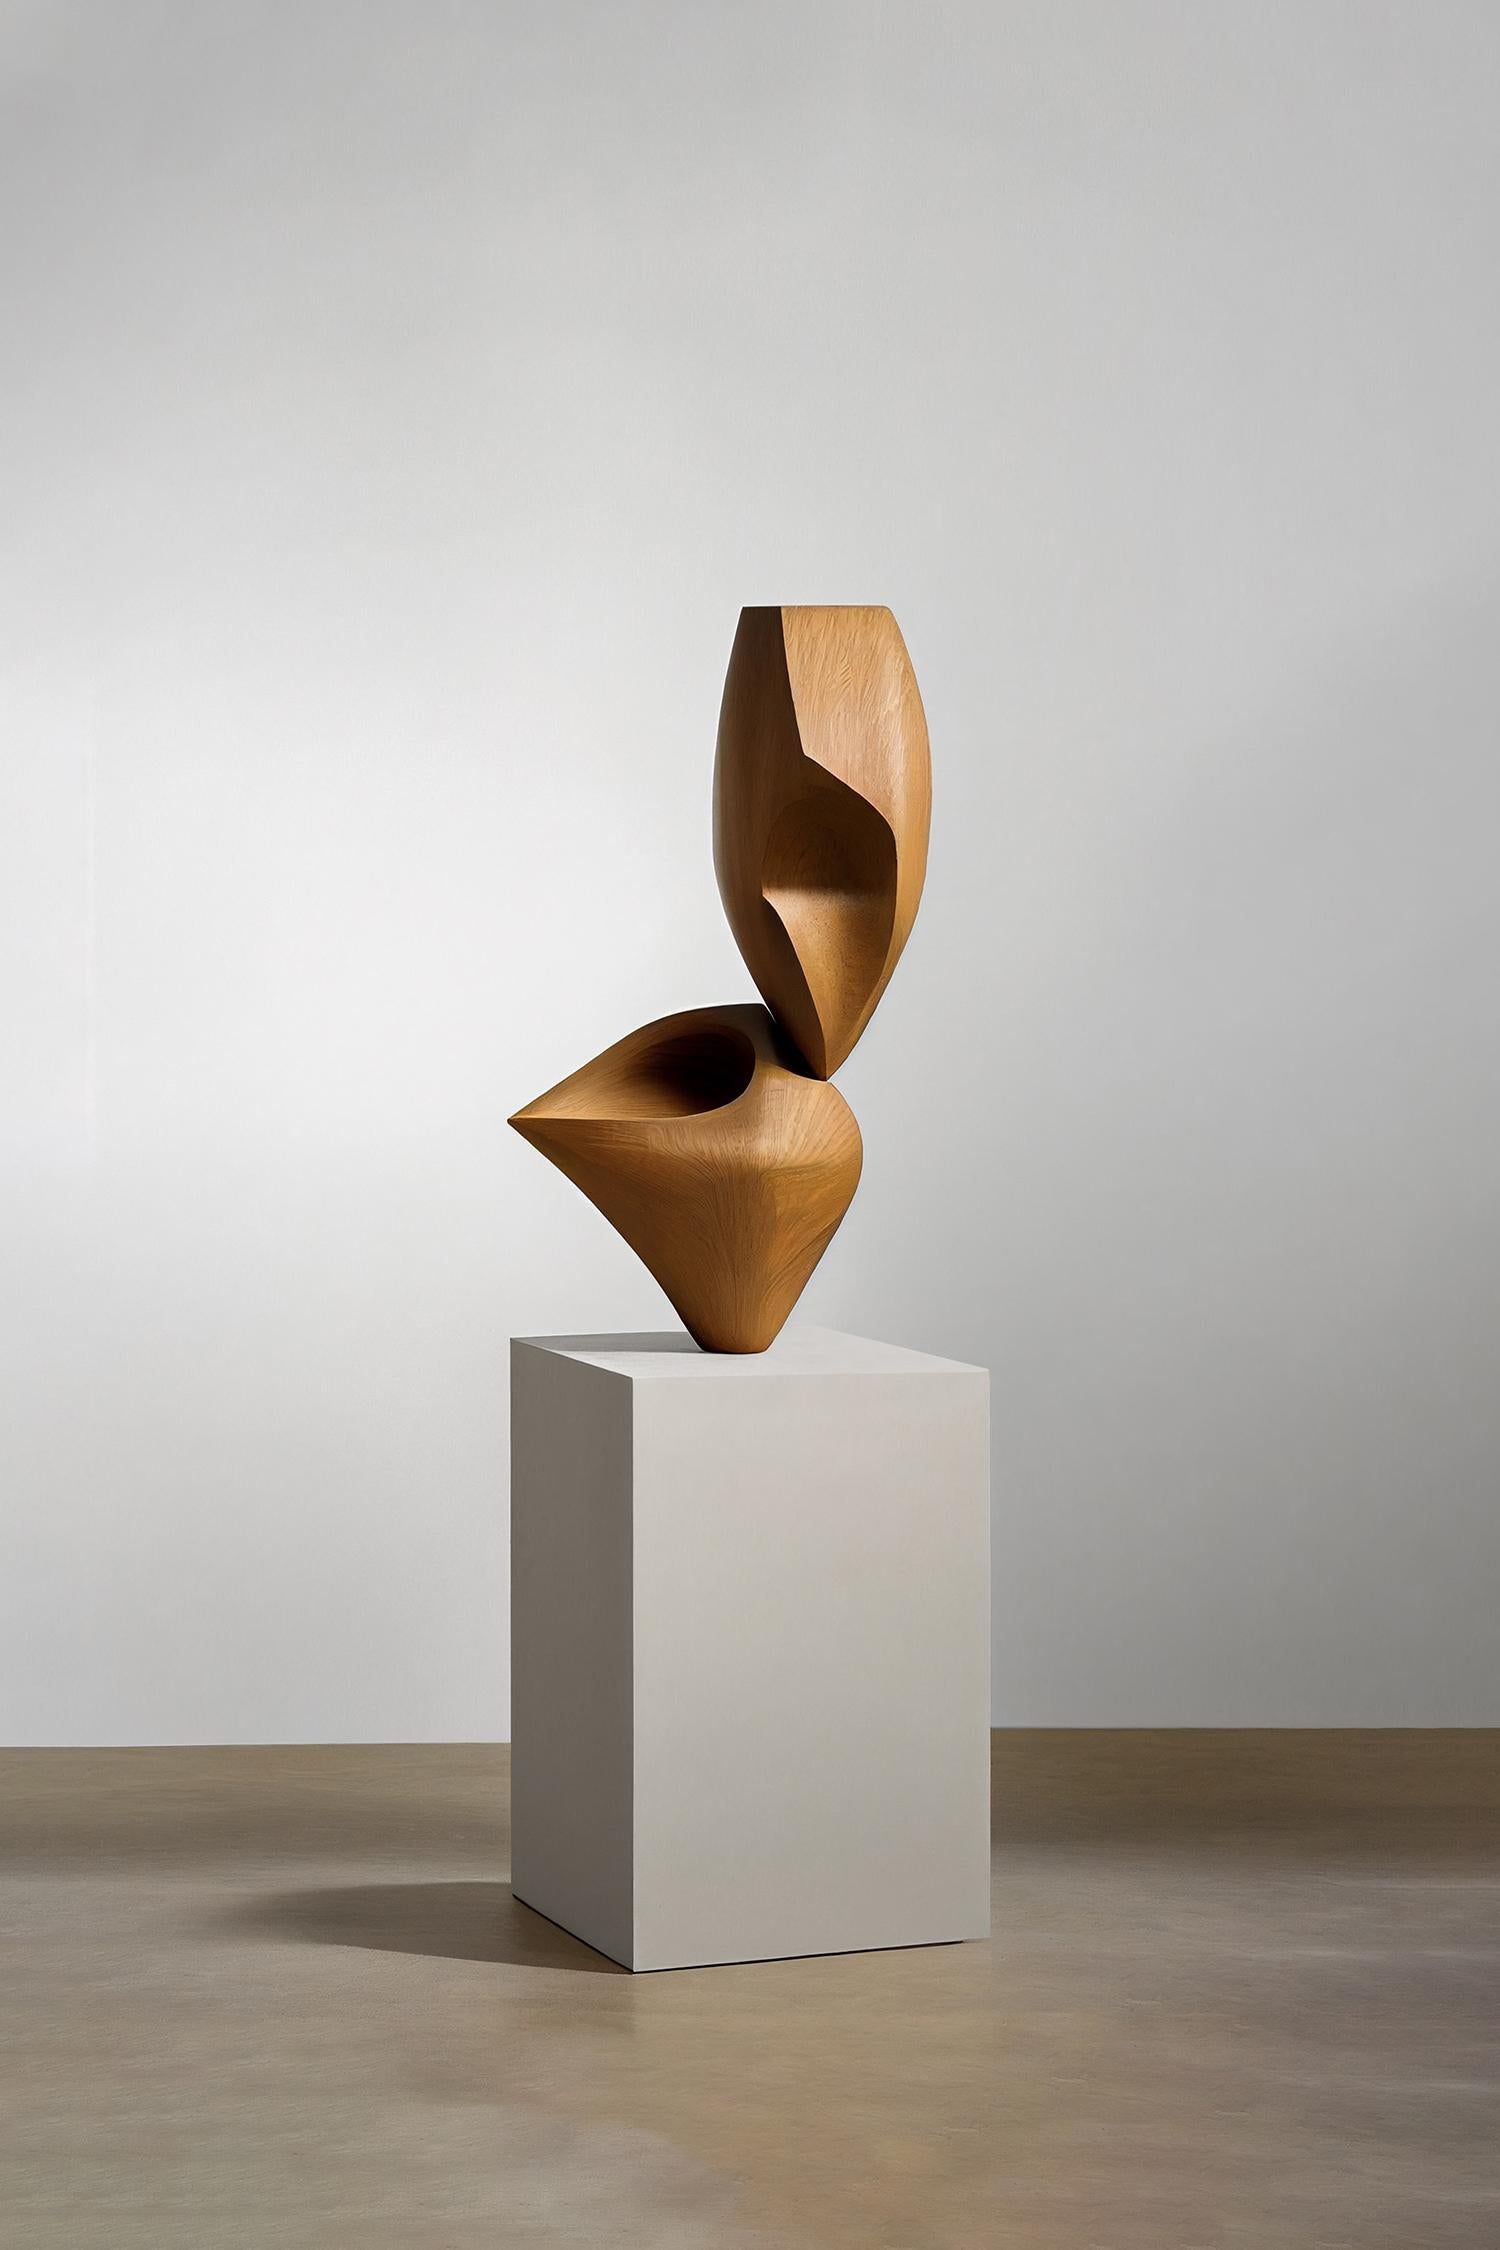 Cette sculpture monolithique, conçue par l'artiste talentueux Joel Escalona, est un exemple impressionnant de la beauté de l'artisanat. Réalisée à la main et à la machine numérique, la sculpture en pied se dresse comme un monument qui témoigne de